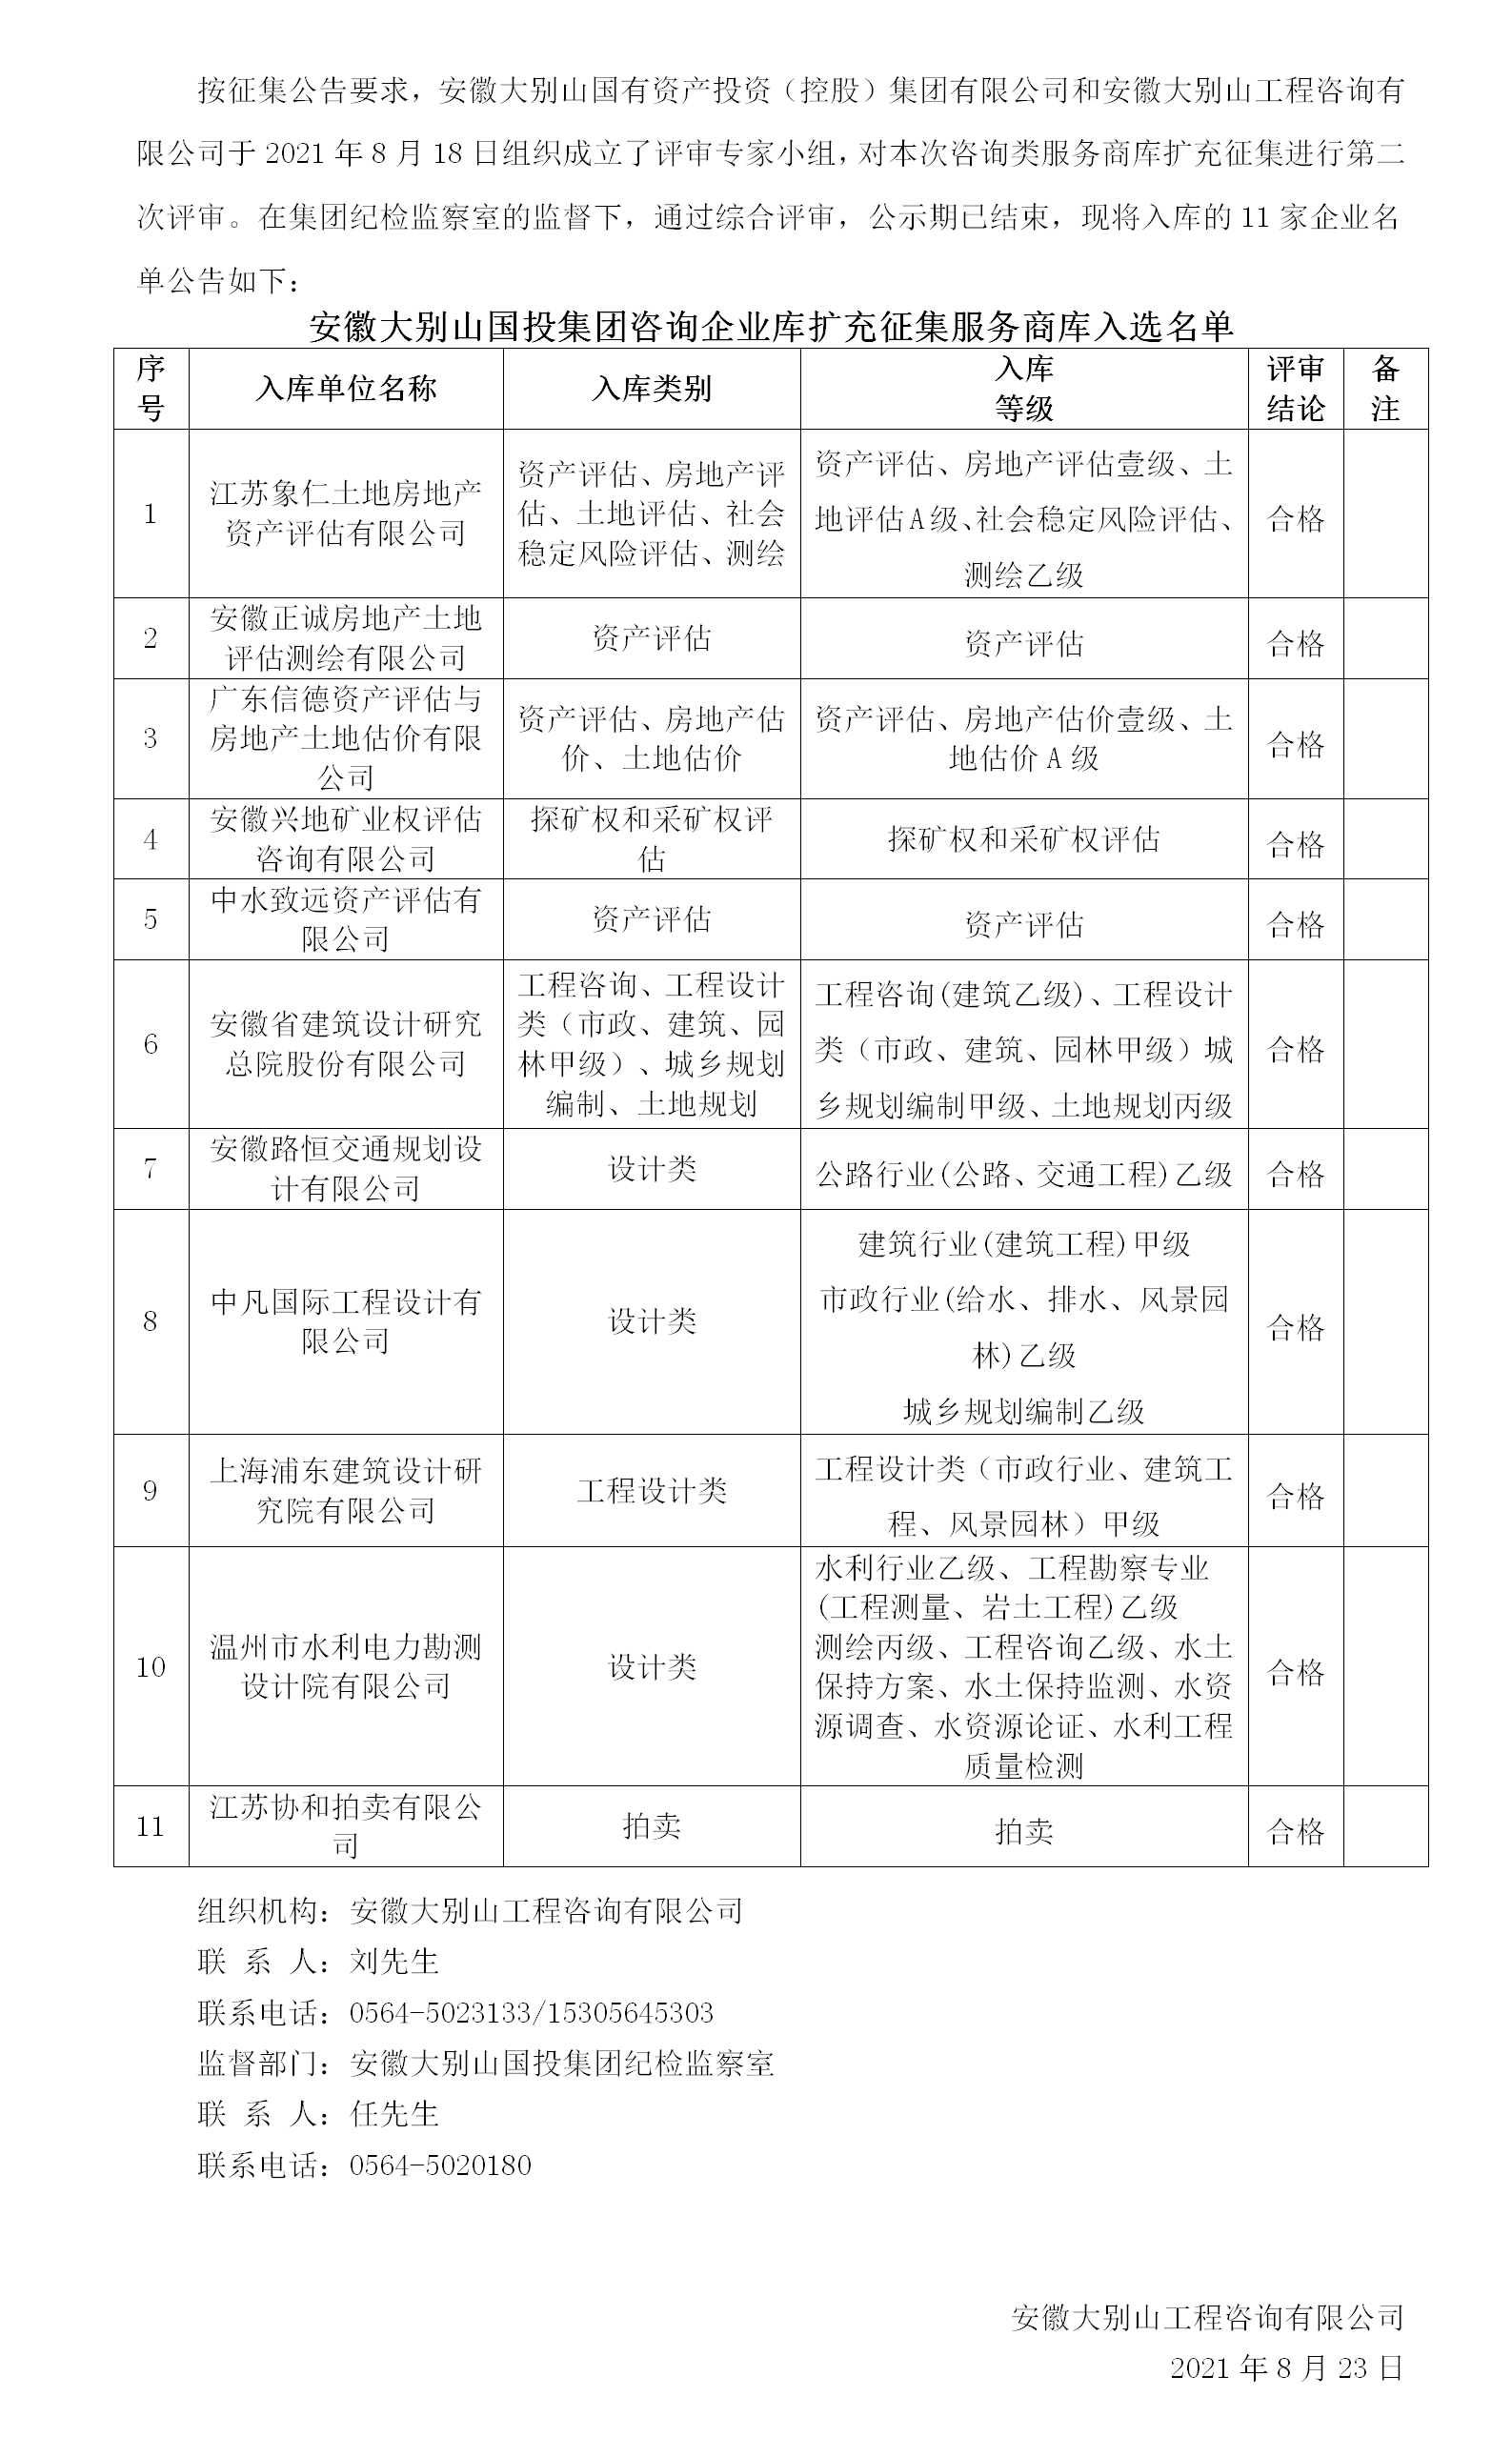 DBSCG-2021-091 安徽大别山国投集团咨询企业库扩充征集服务商库入选名单公告（二）